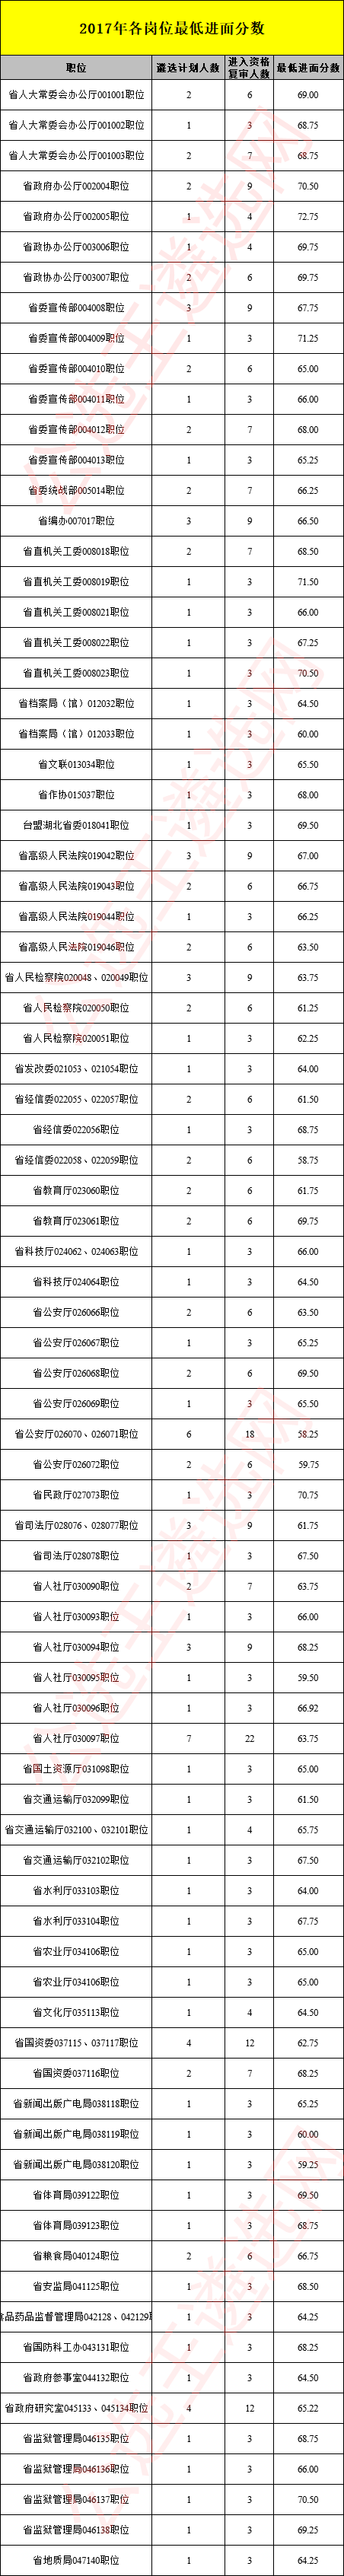 2017年湖北省直遴选各岗位最低进面分数.png